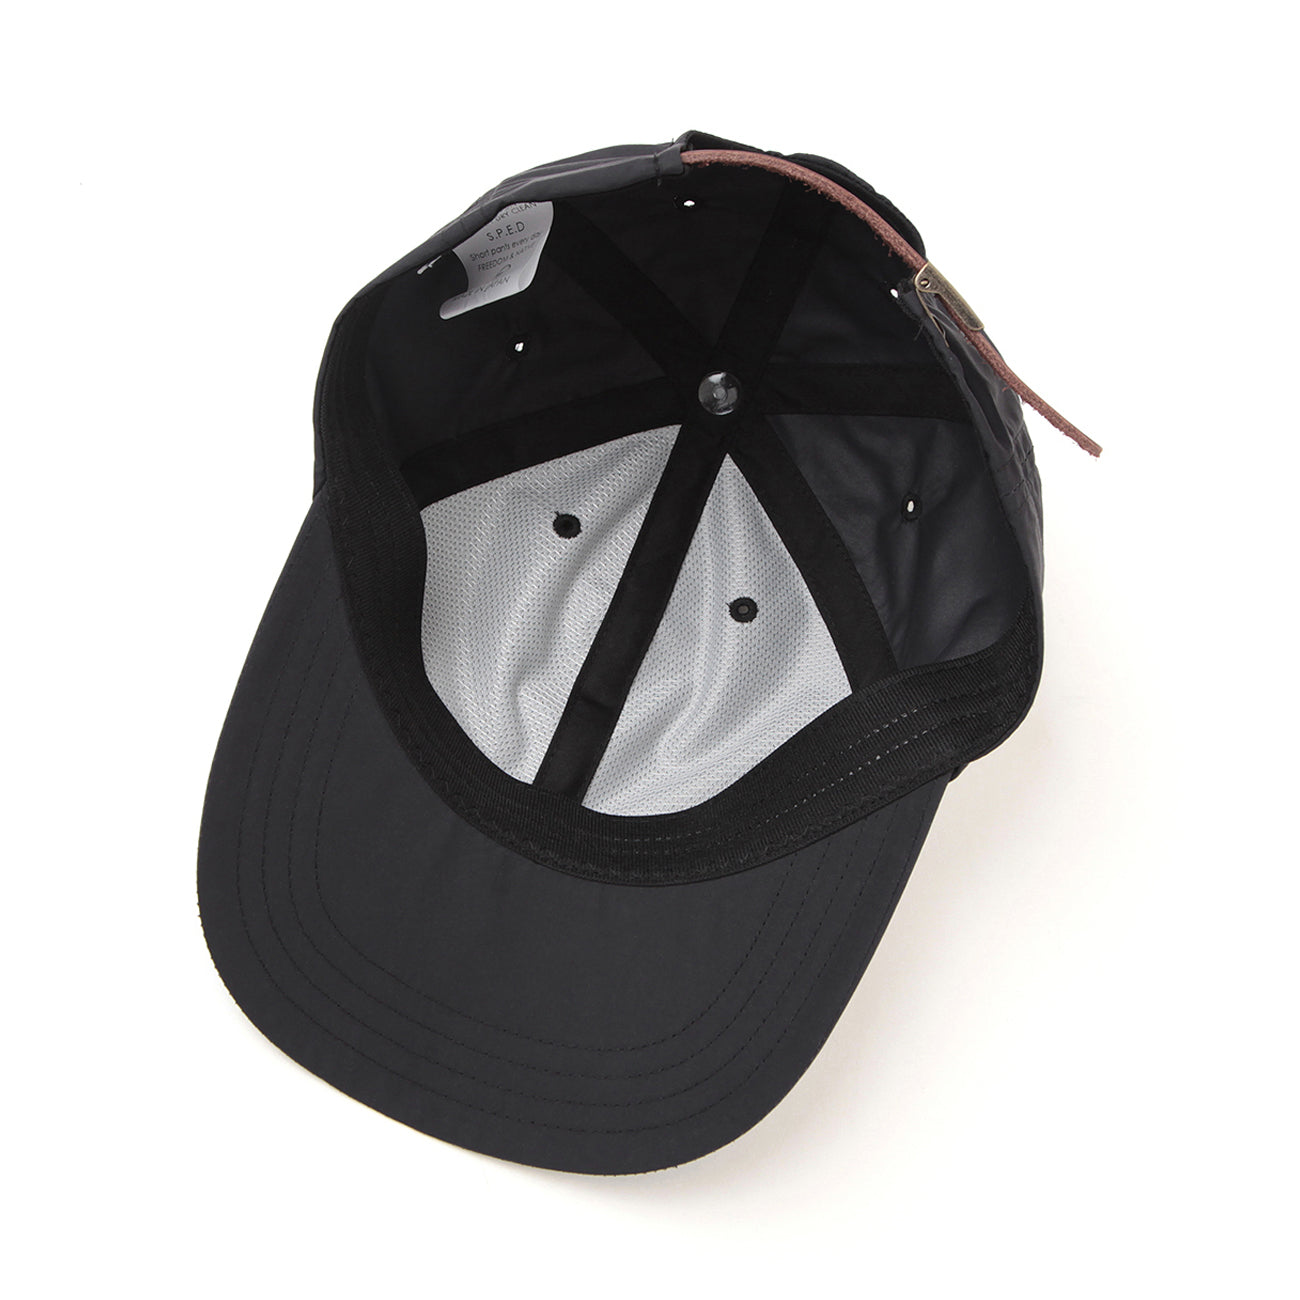 KED CAP (BOARD) - BLACK